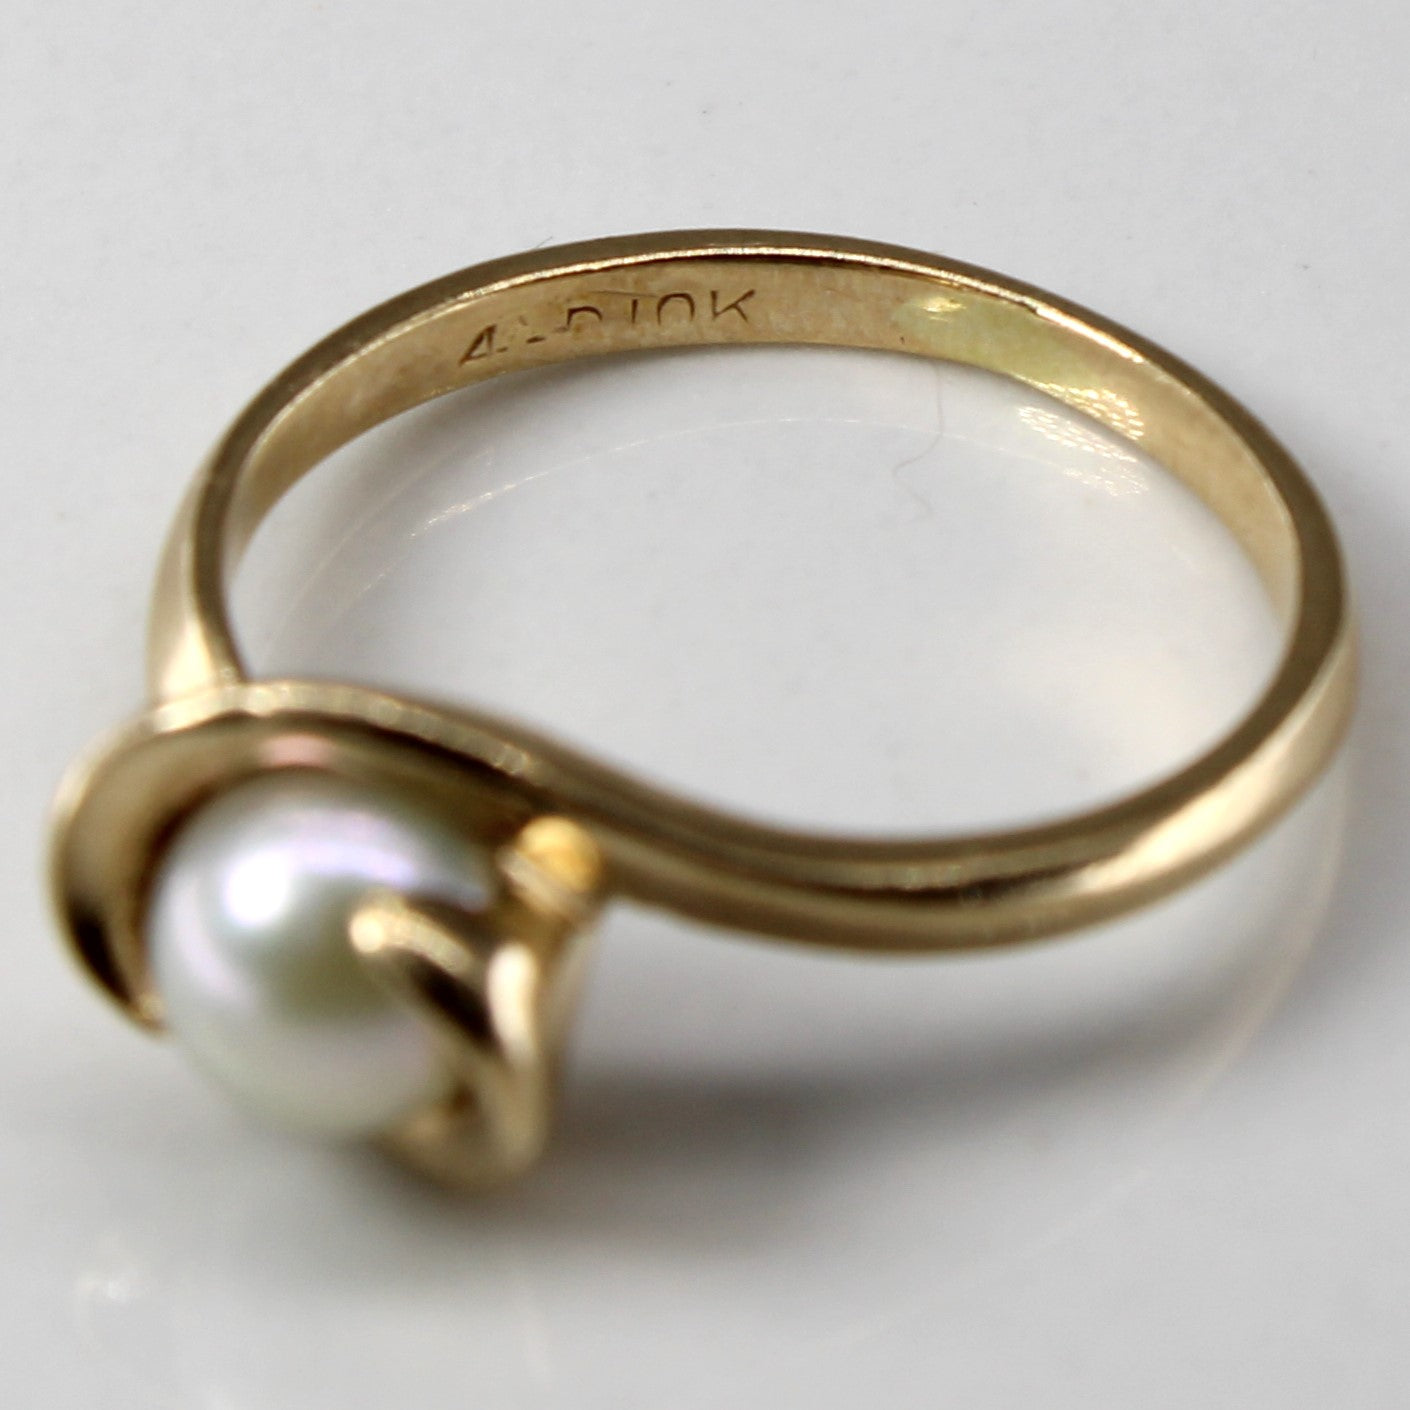 Semi Bezel Pearl Ring | SZ 4.75 |